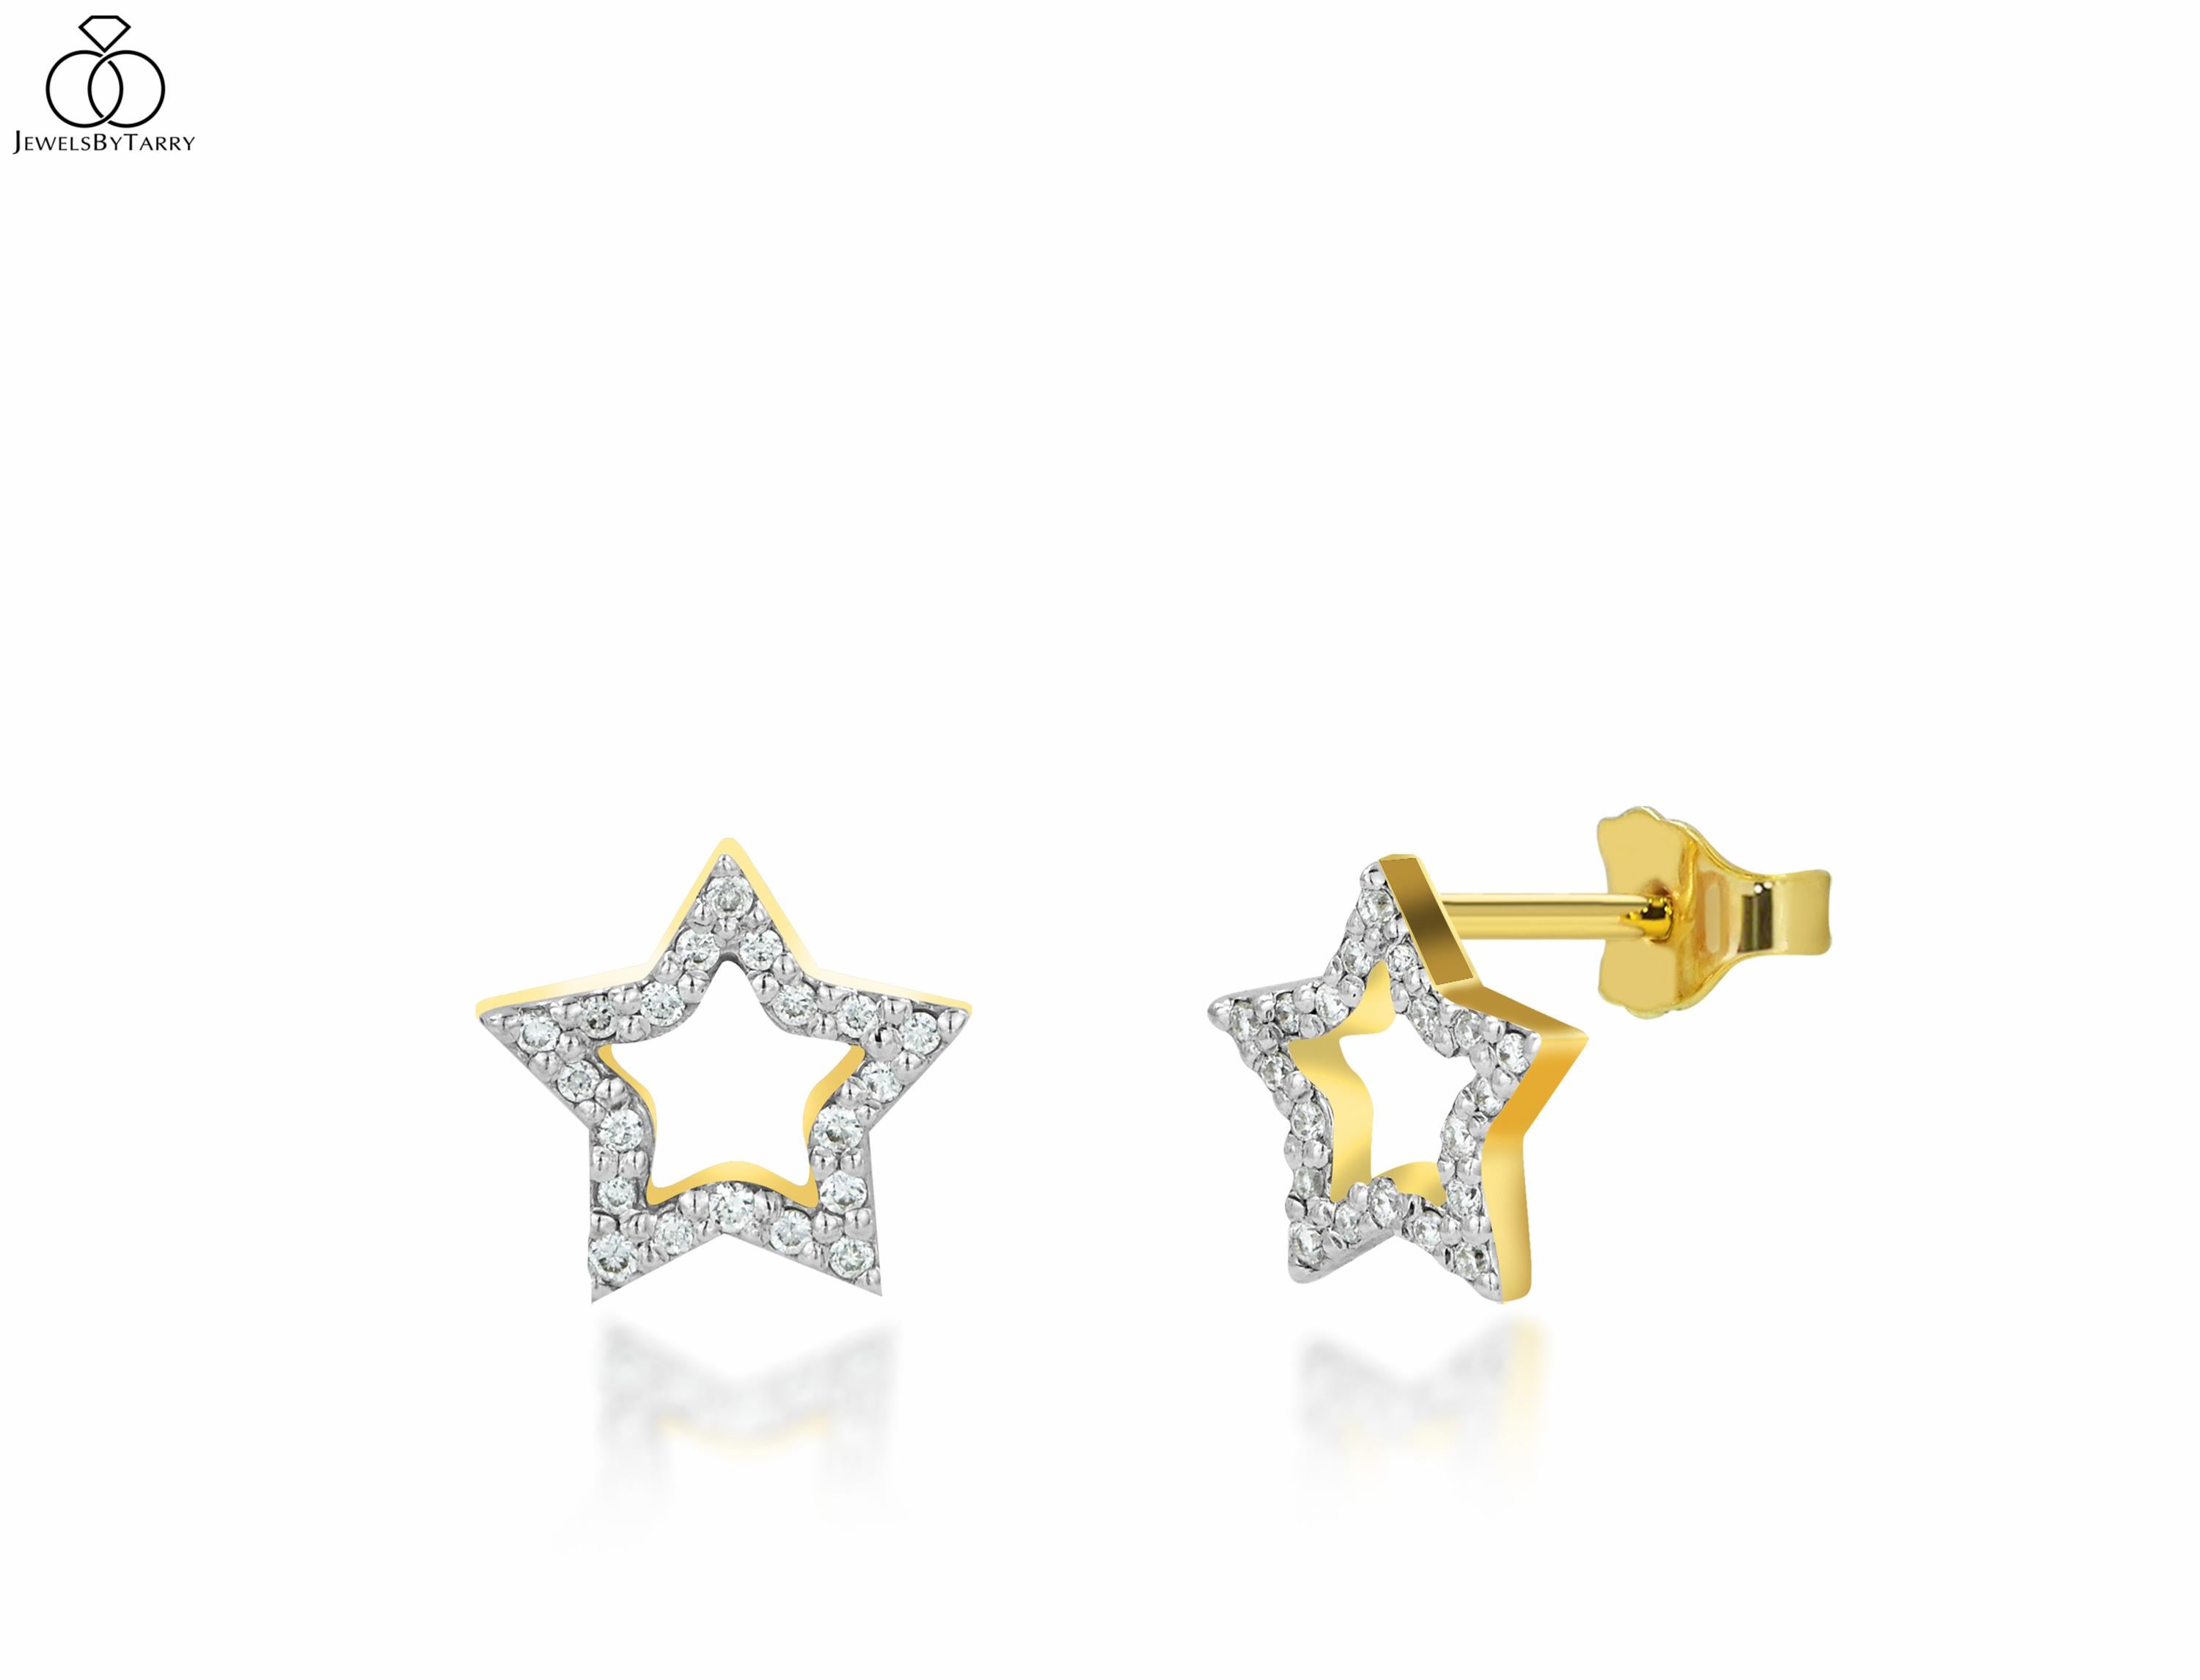 Les clous d'oreilles étoile en diamant sont fabriqués en or massif 14k disponible en trois couleurs d'or, or blanc / or rose / or blanc.

Ces délicats clous d'oreilles en or 14k sont ornés de diamants naturels brillants et ronds, sertis par des